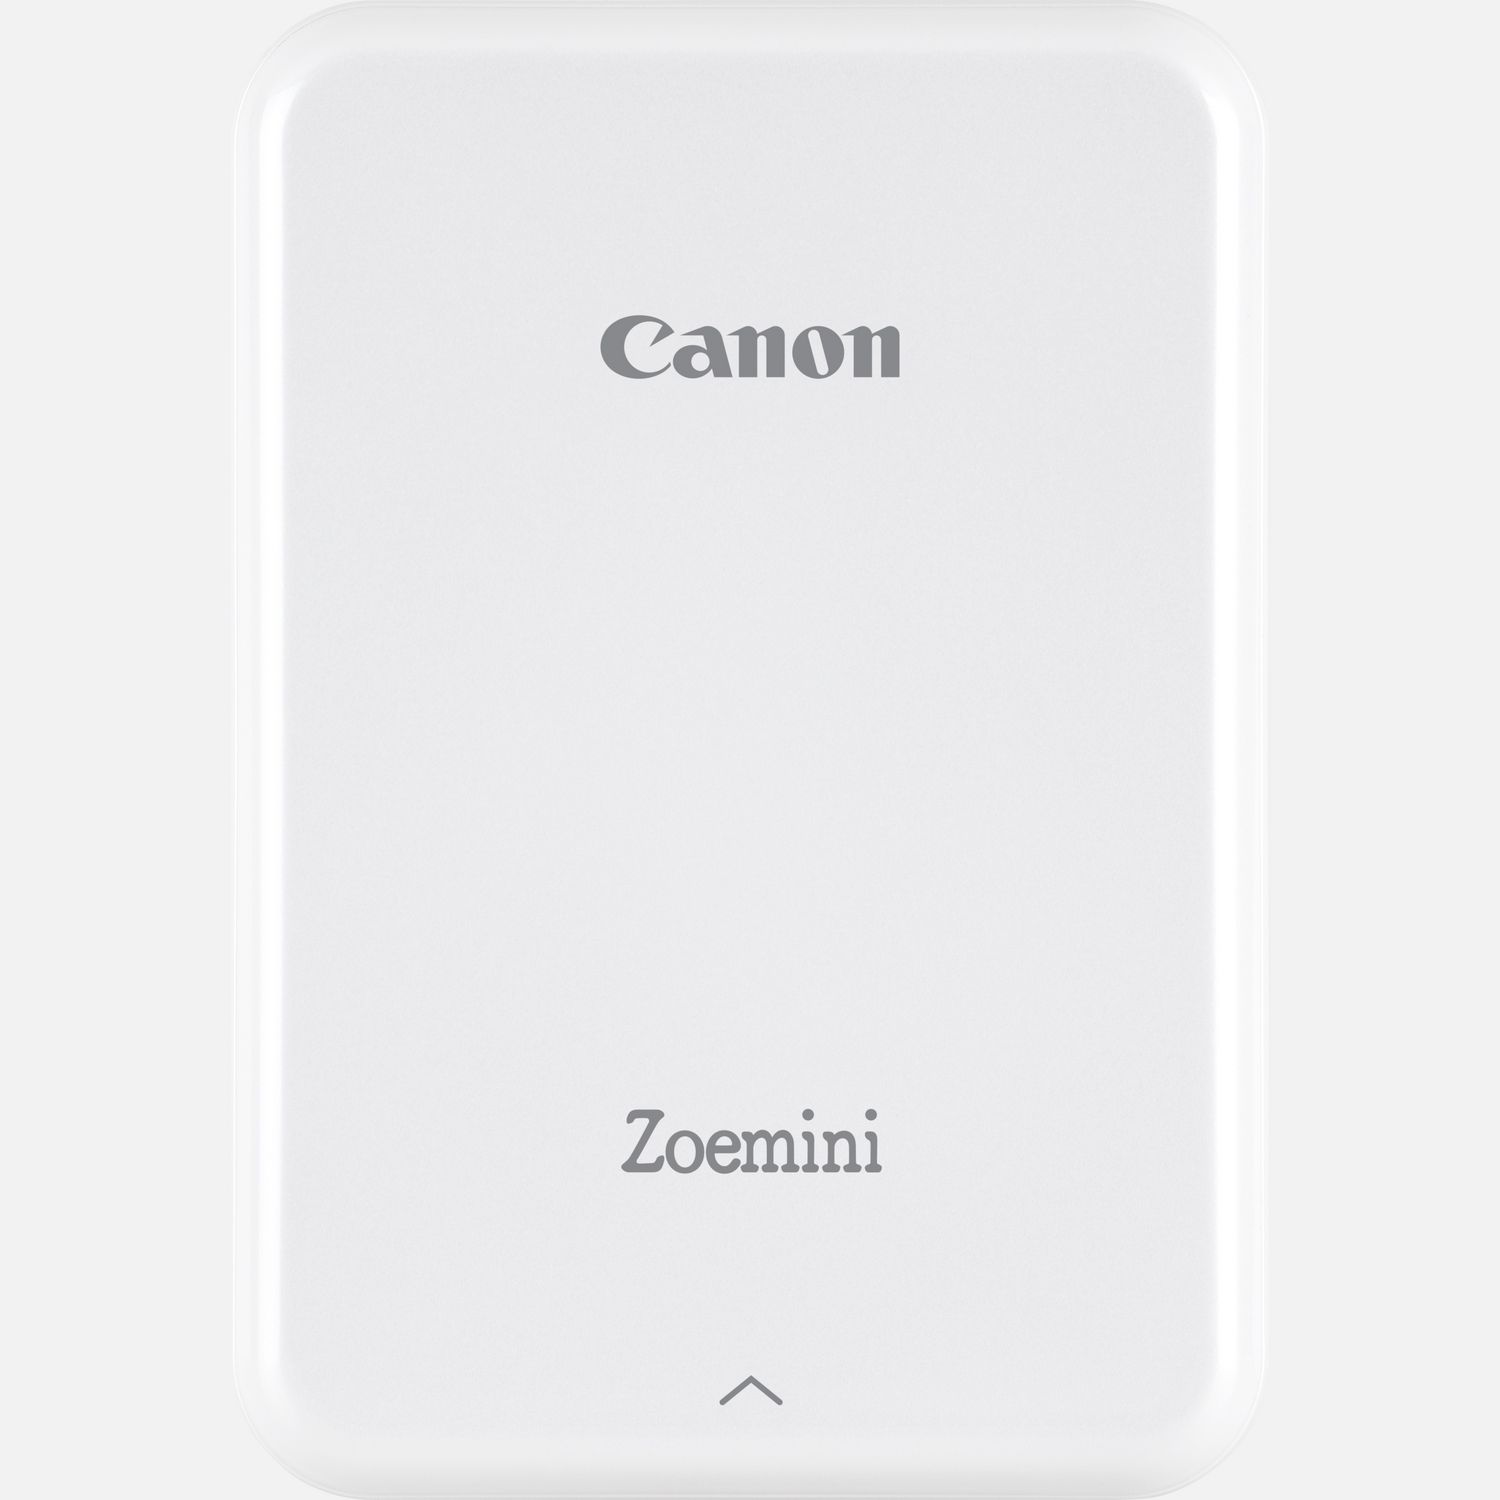 Stampante fotografica portatile Canon Zoemini, bianca